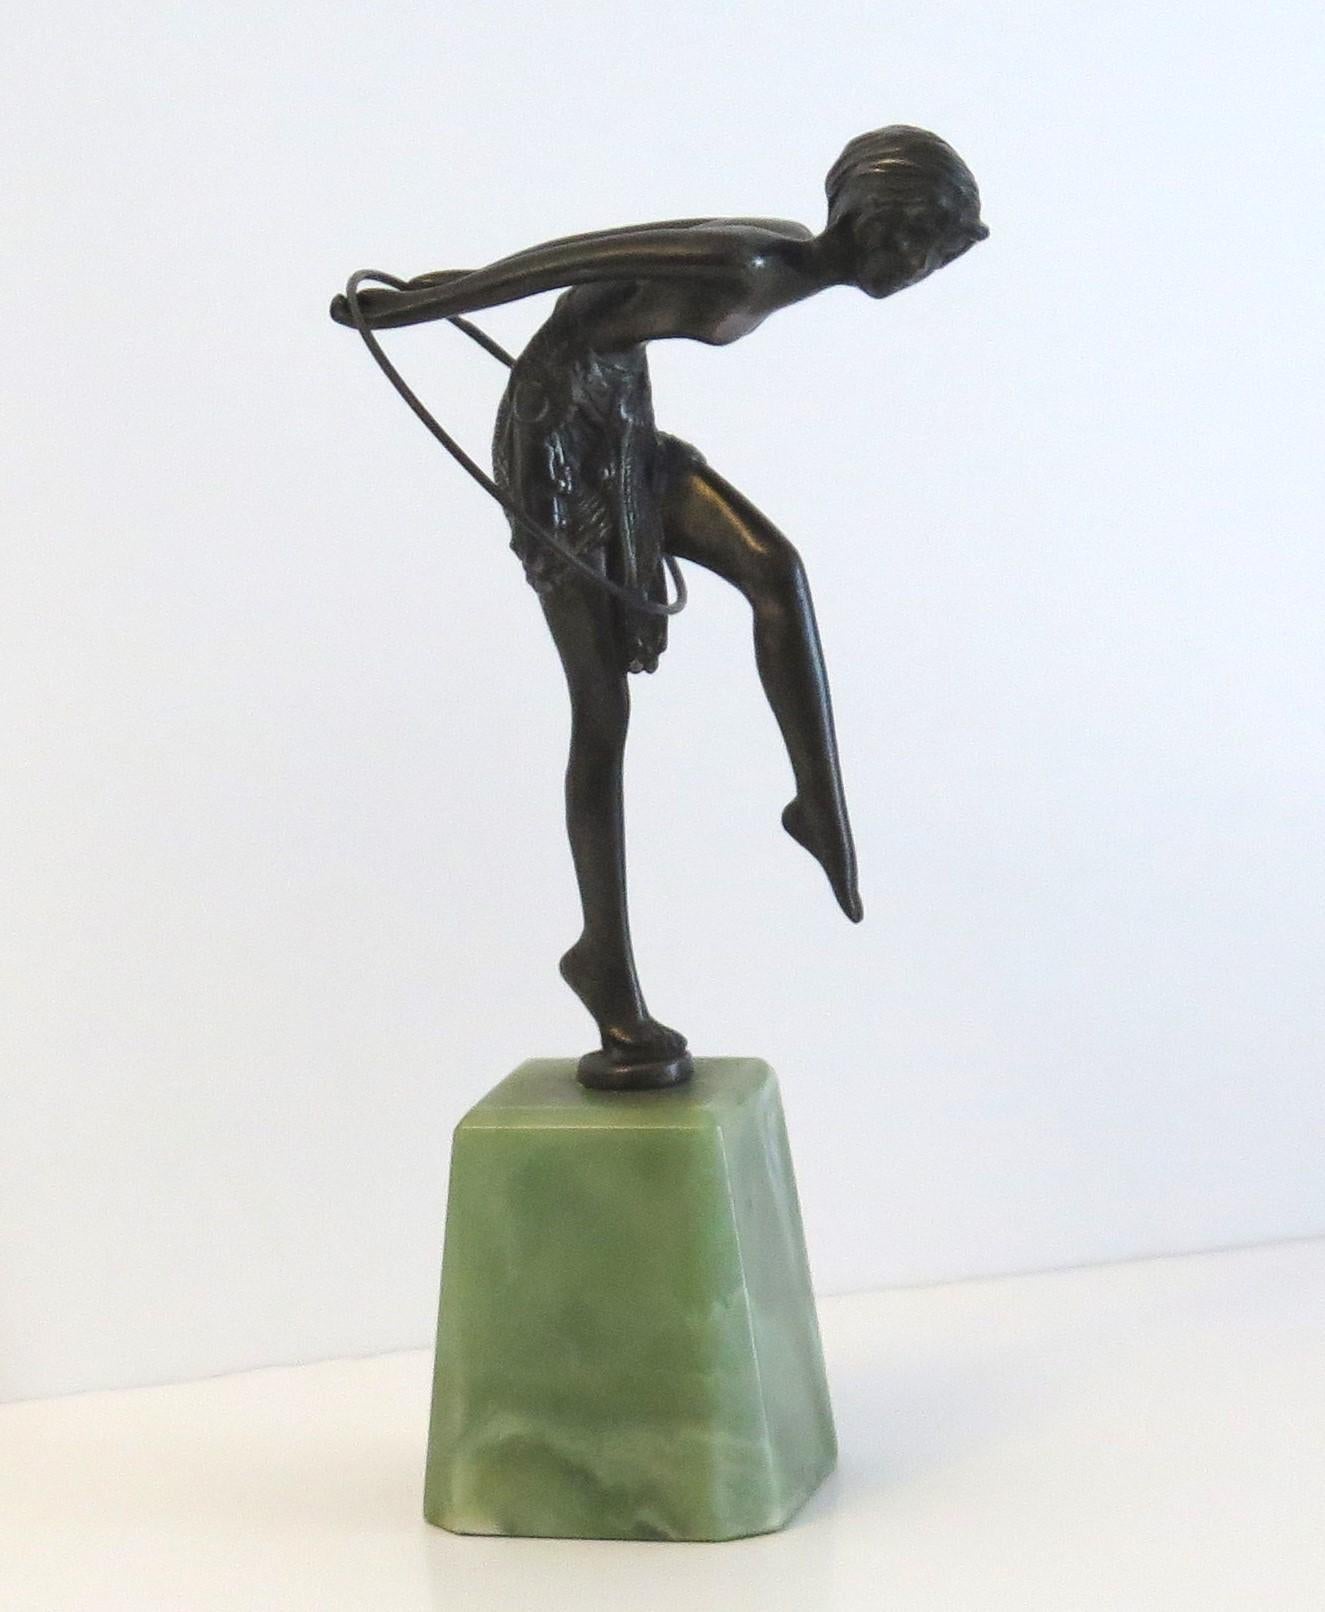 Il s'agit d'une figurine en bronze massif d'une dame dansant appelée Hoop Girl d'après D H Chiparus, sur une base en Onyx, datant de la période Art Déco, Circa 1925 à 1935.

La figure est magnifiquement sculptée avec de très bons détails - voir la